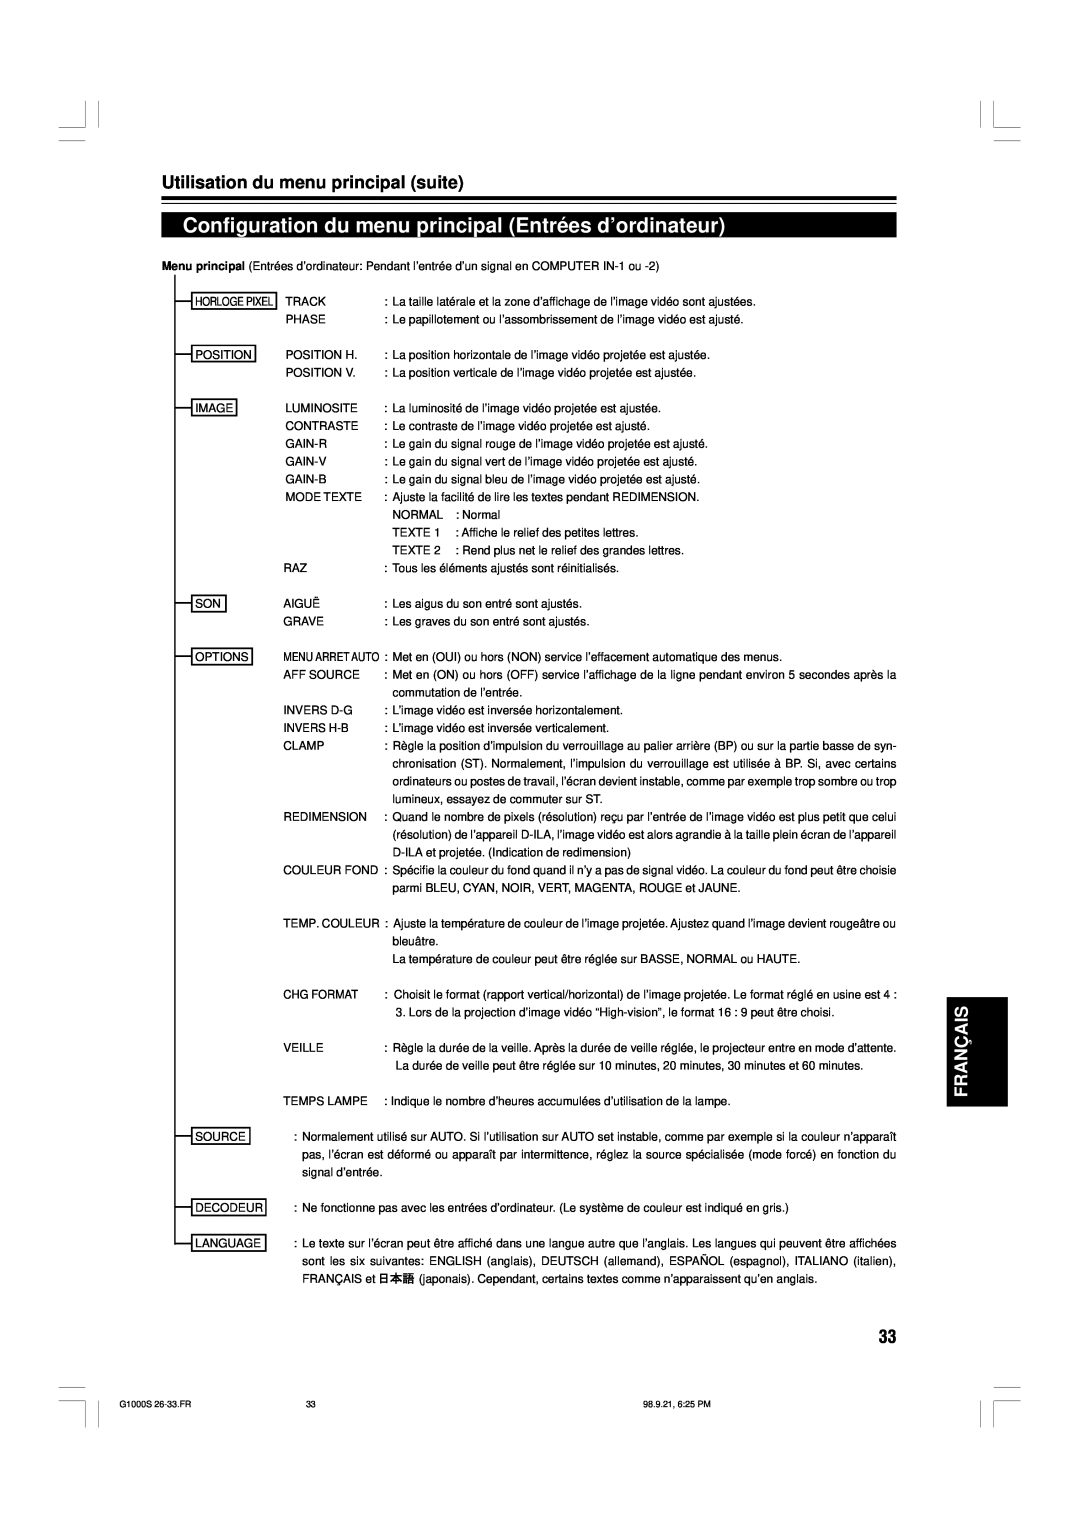 JVC G1000S manual Configuration du menu principal Entrées d’ordinateur, Utilisation du menu principal suite, Français 